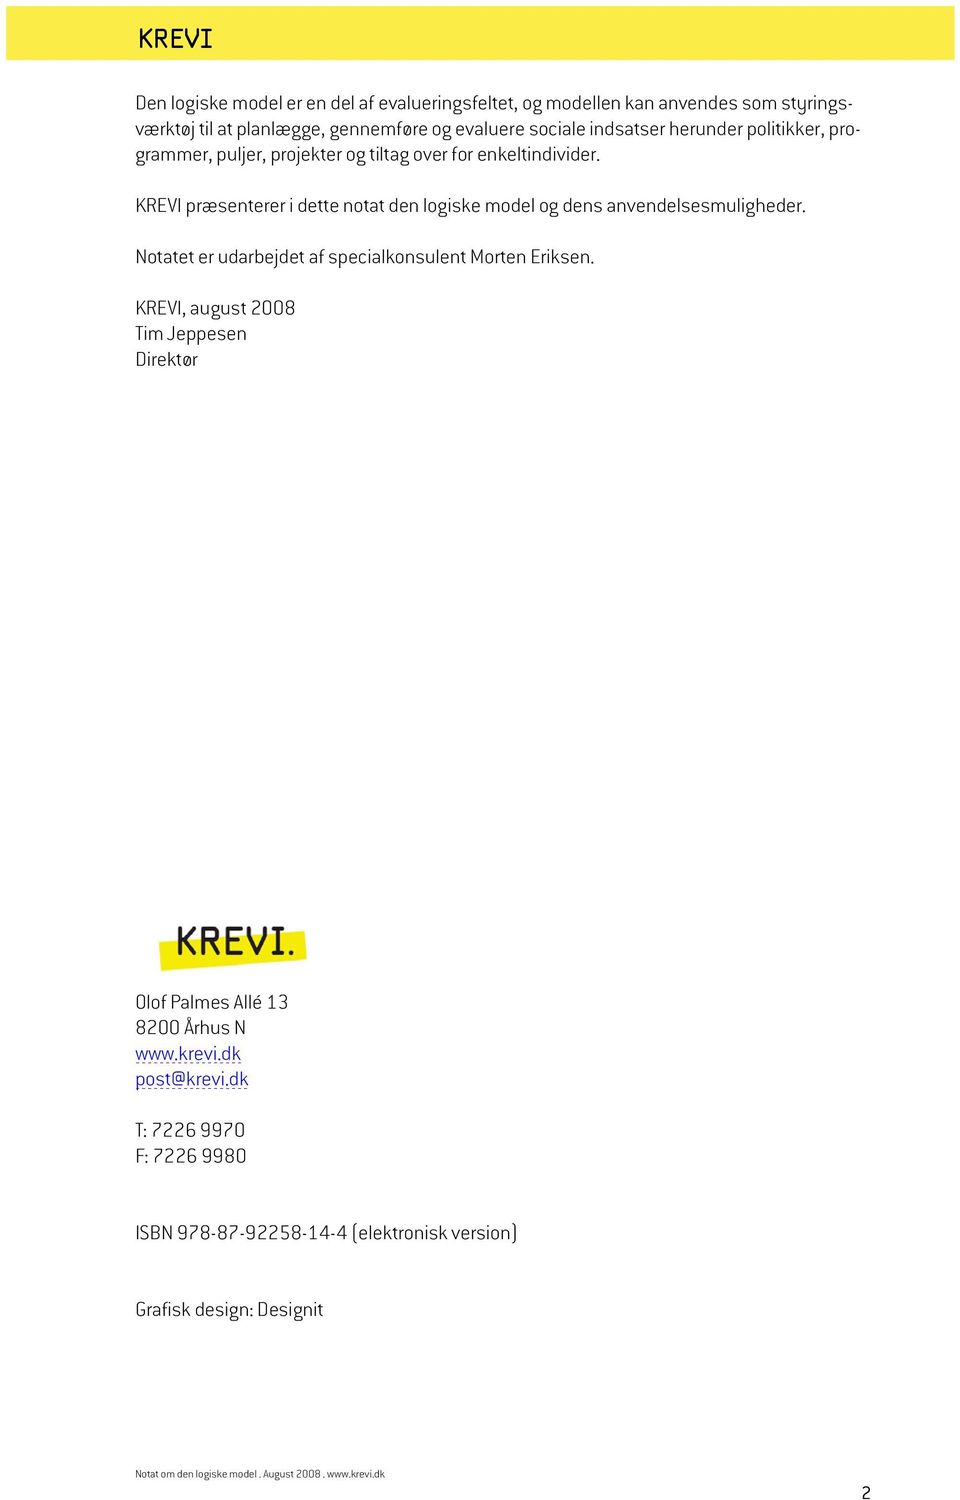 KREVI præsenterer i dette notat den logiske model og dens anvendelsesmuligheder. Notatet er udarbejdet af specialkonsulent Morten Eriksen.